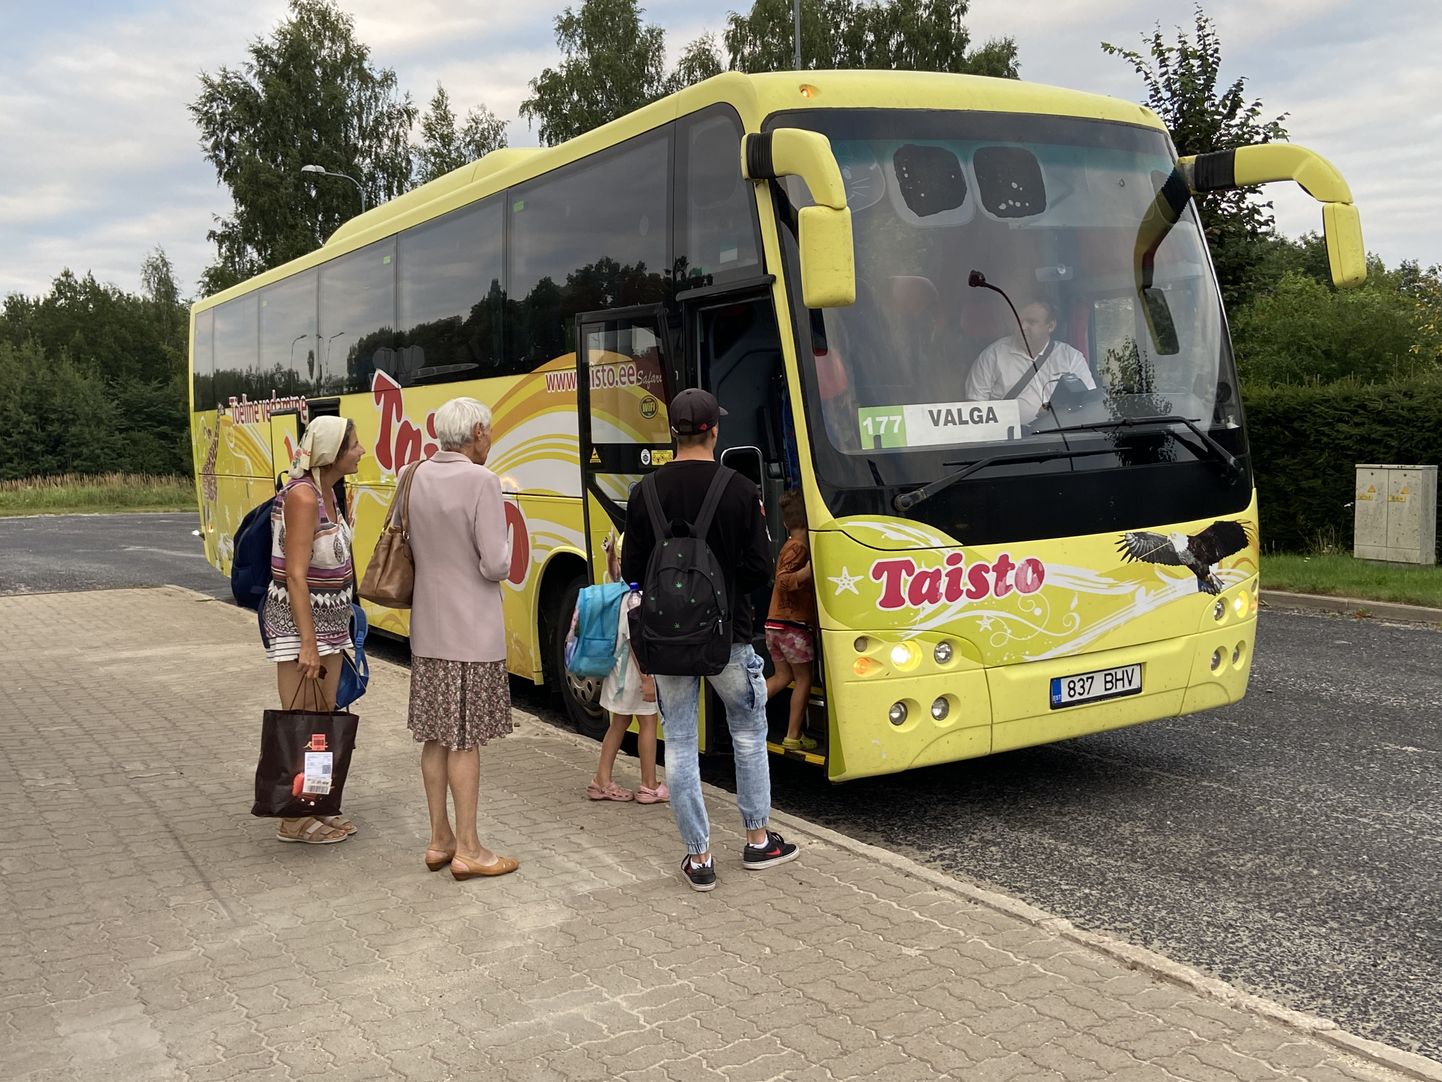 Nädal tagasi, eelmise pühapäeva õhtul tegi bussifirma Taisto viimase reisi Tallinnast Valka. Paidest läks bussile neli reisijat ja samapalju ka väljus. Türilt tuli bussile ema lapsega.